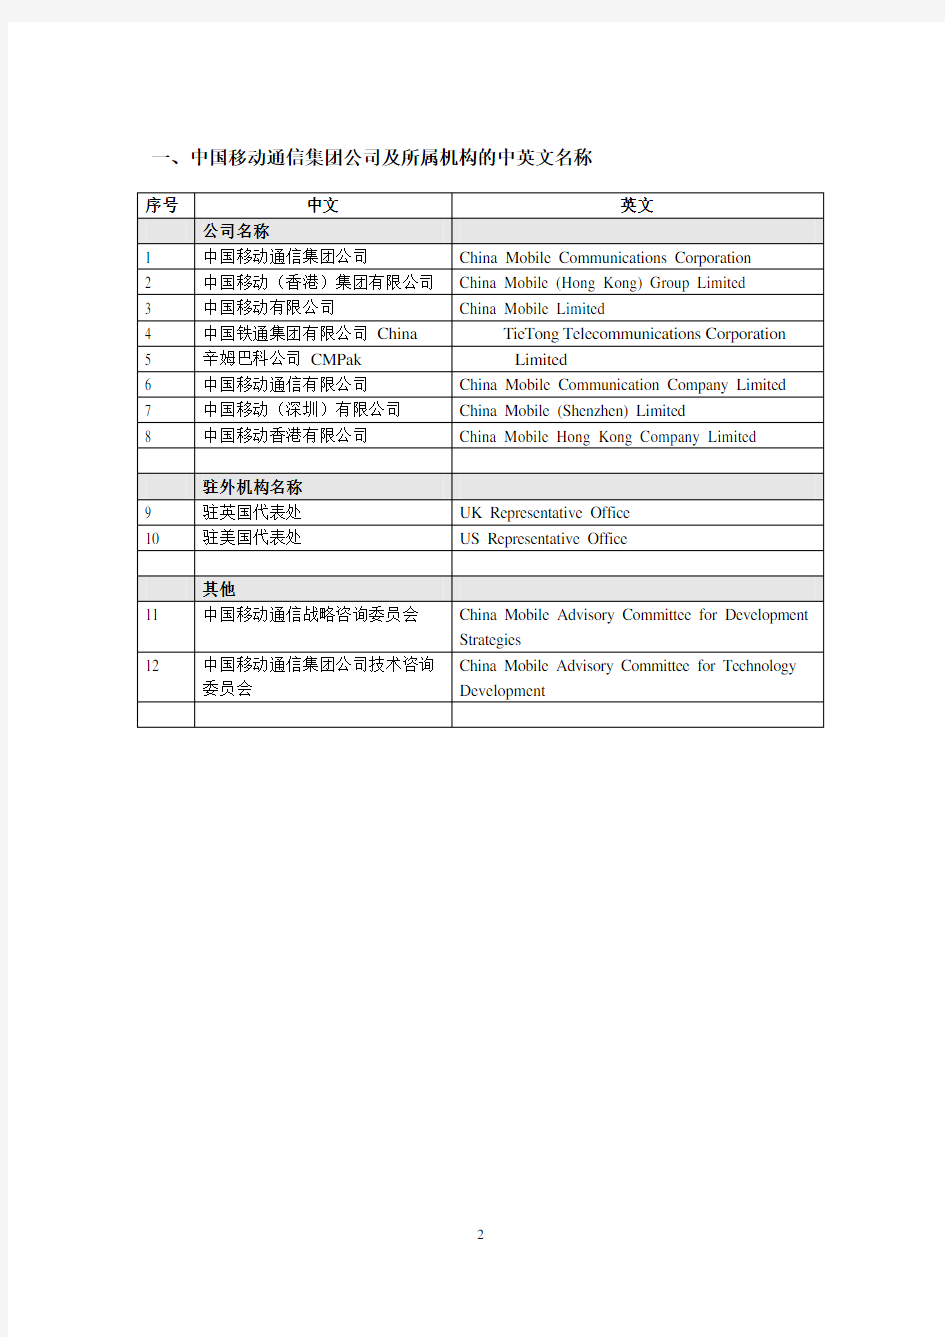 中国移动通信集团公司中、英文名称对照表(第三版)